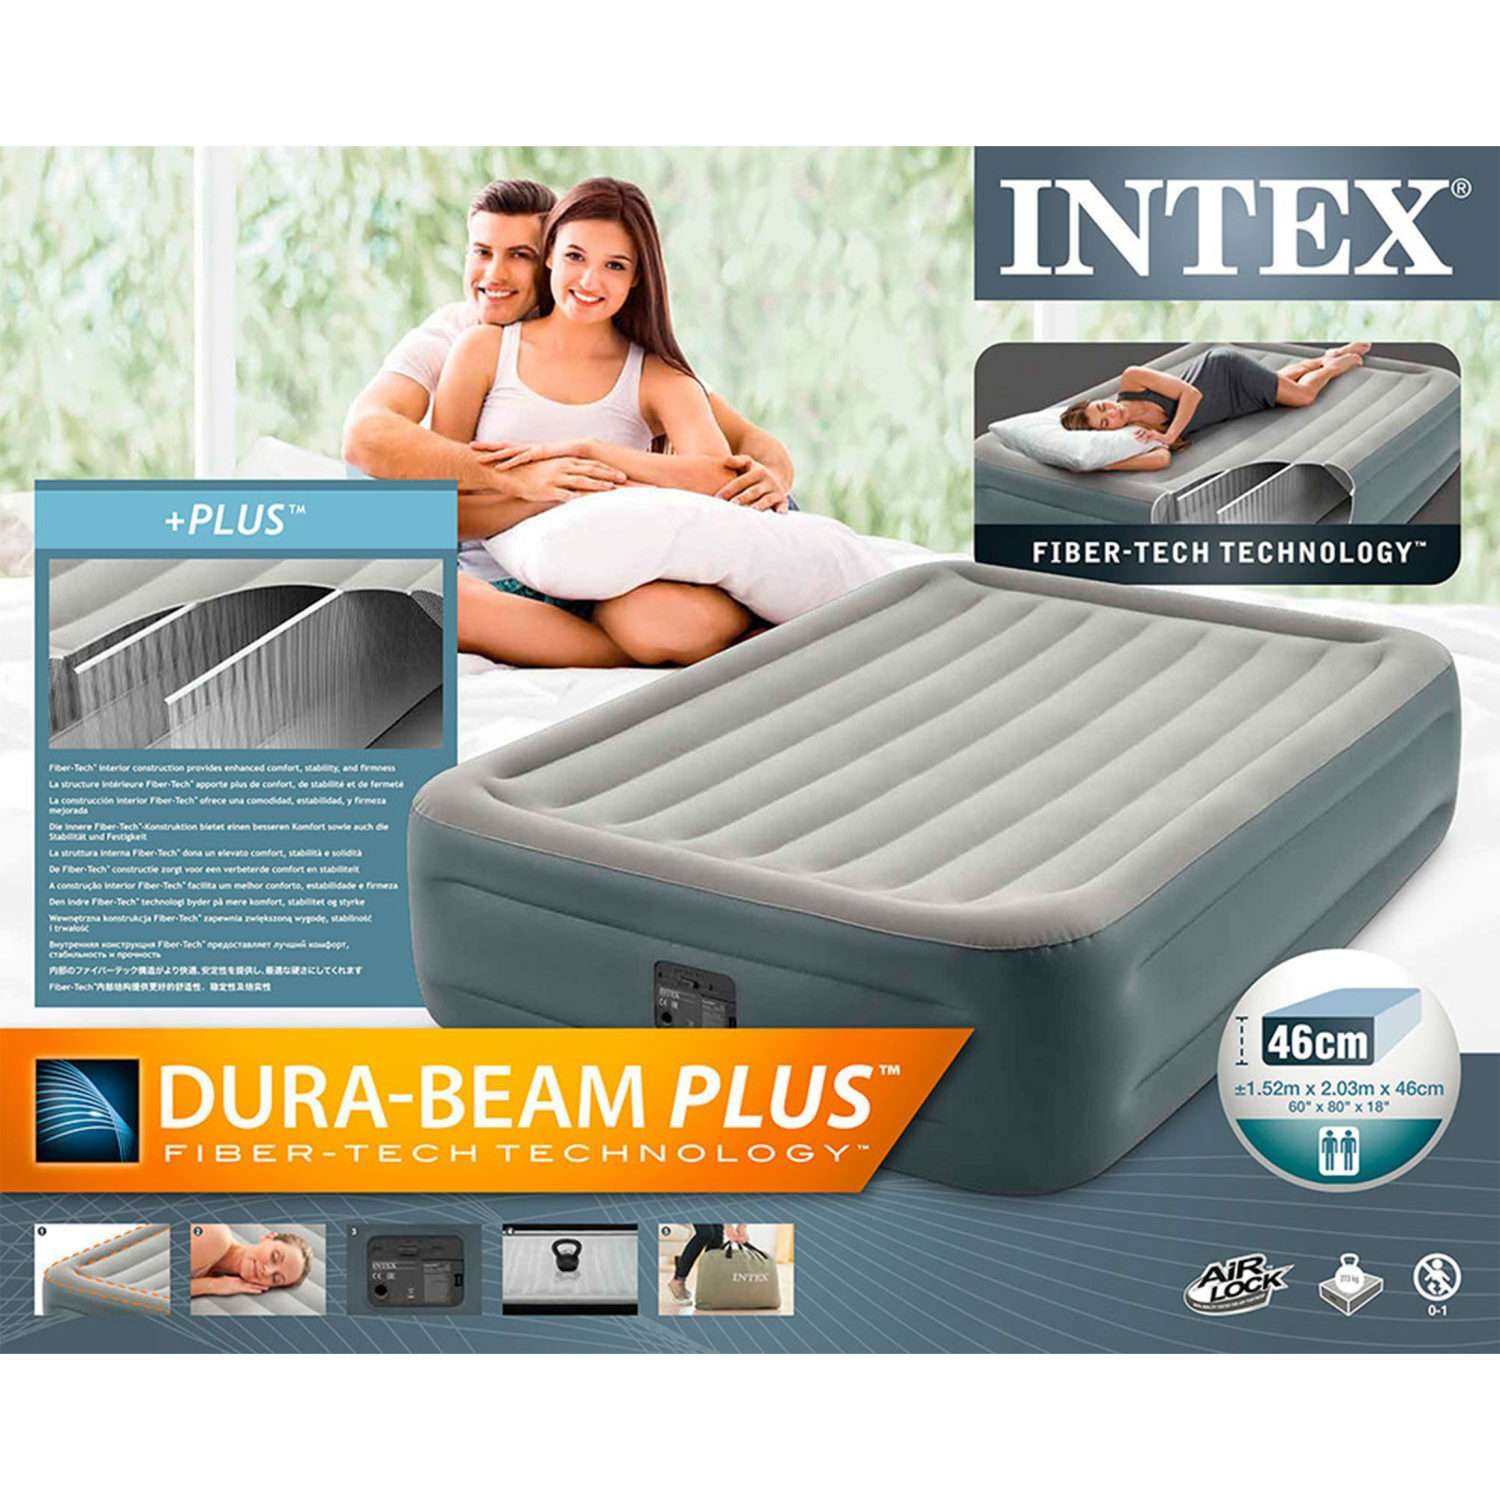 Надувной матрас INTEX кровать дюра бим плюс эссенчиал квин с встроенным насосом 152х203х46 см - фото 6